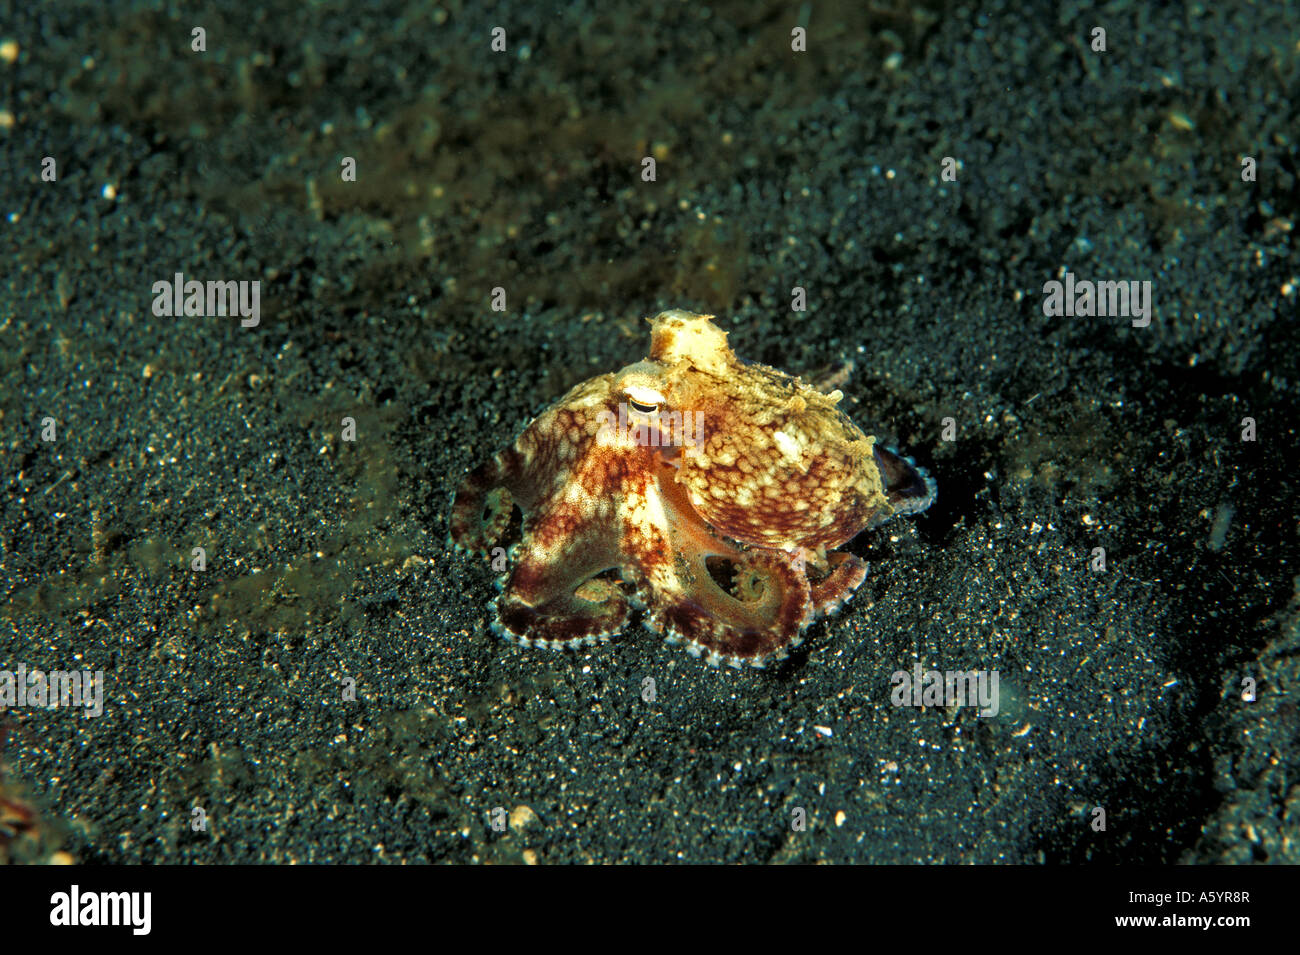 Juvenile octopus Octopus marginatus Sulawesi Indonesia Stock Photo